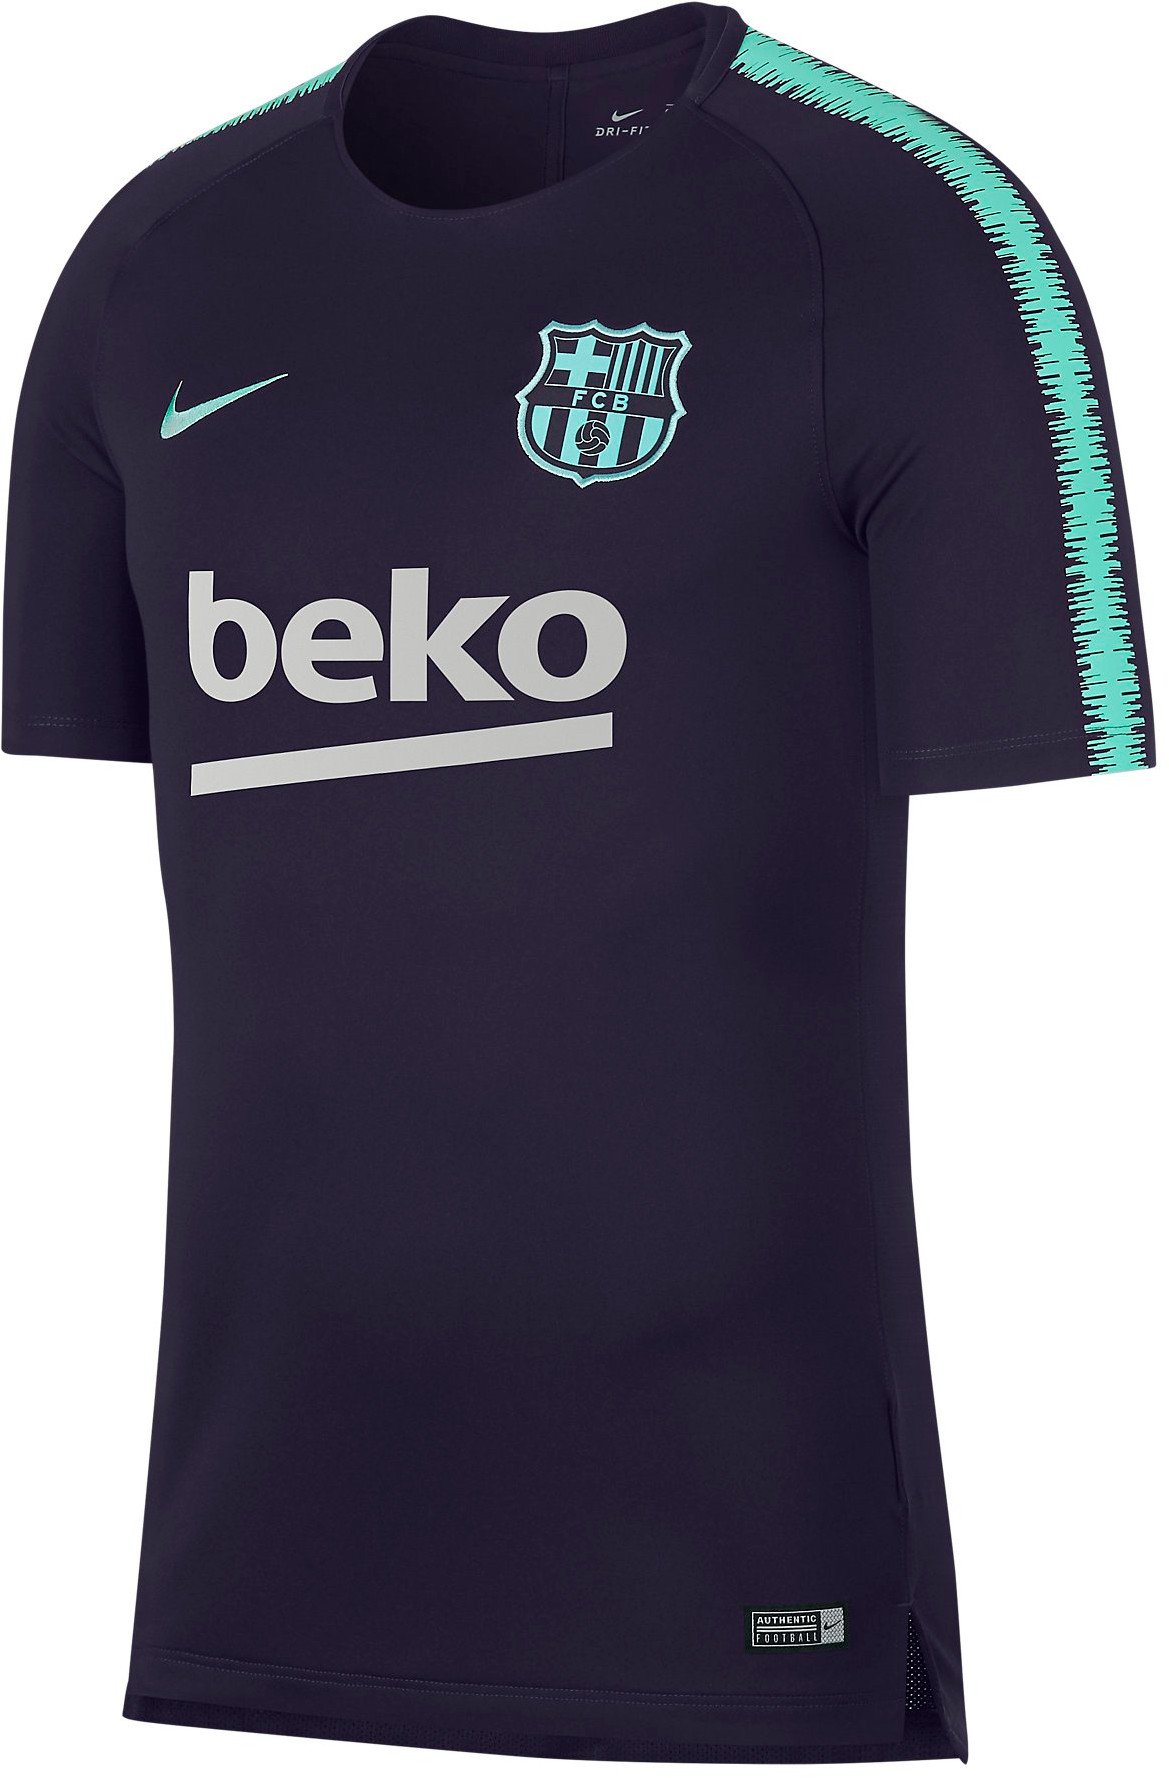 Fotbalový top s krátkým rukávem Nike Breathe FC Barcelona